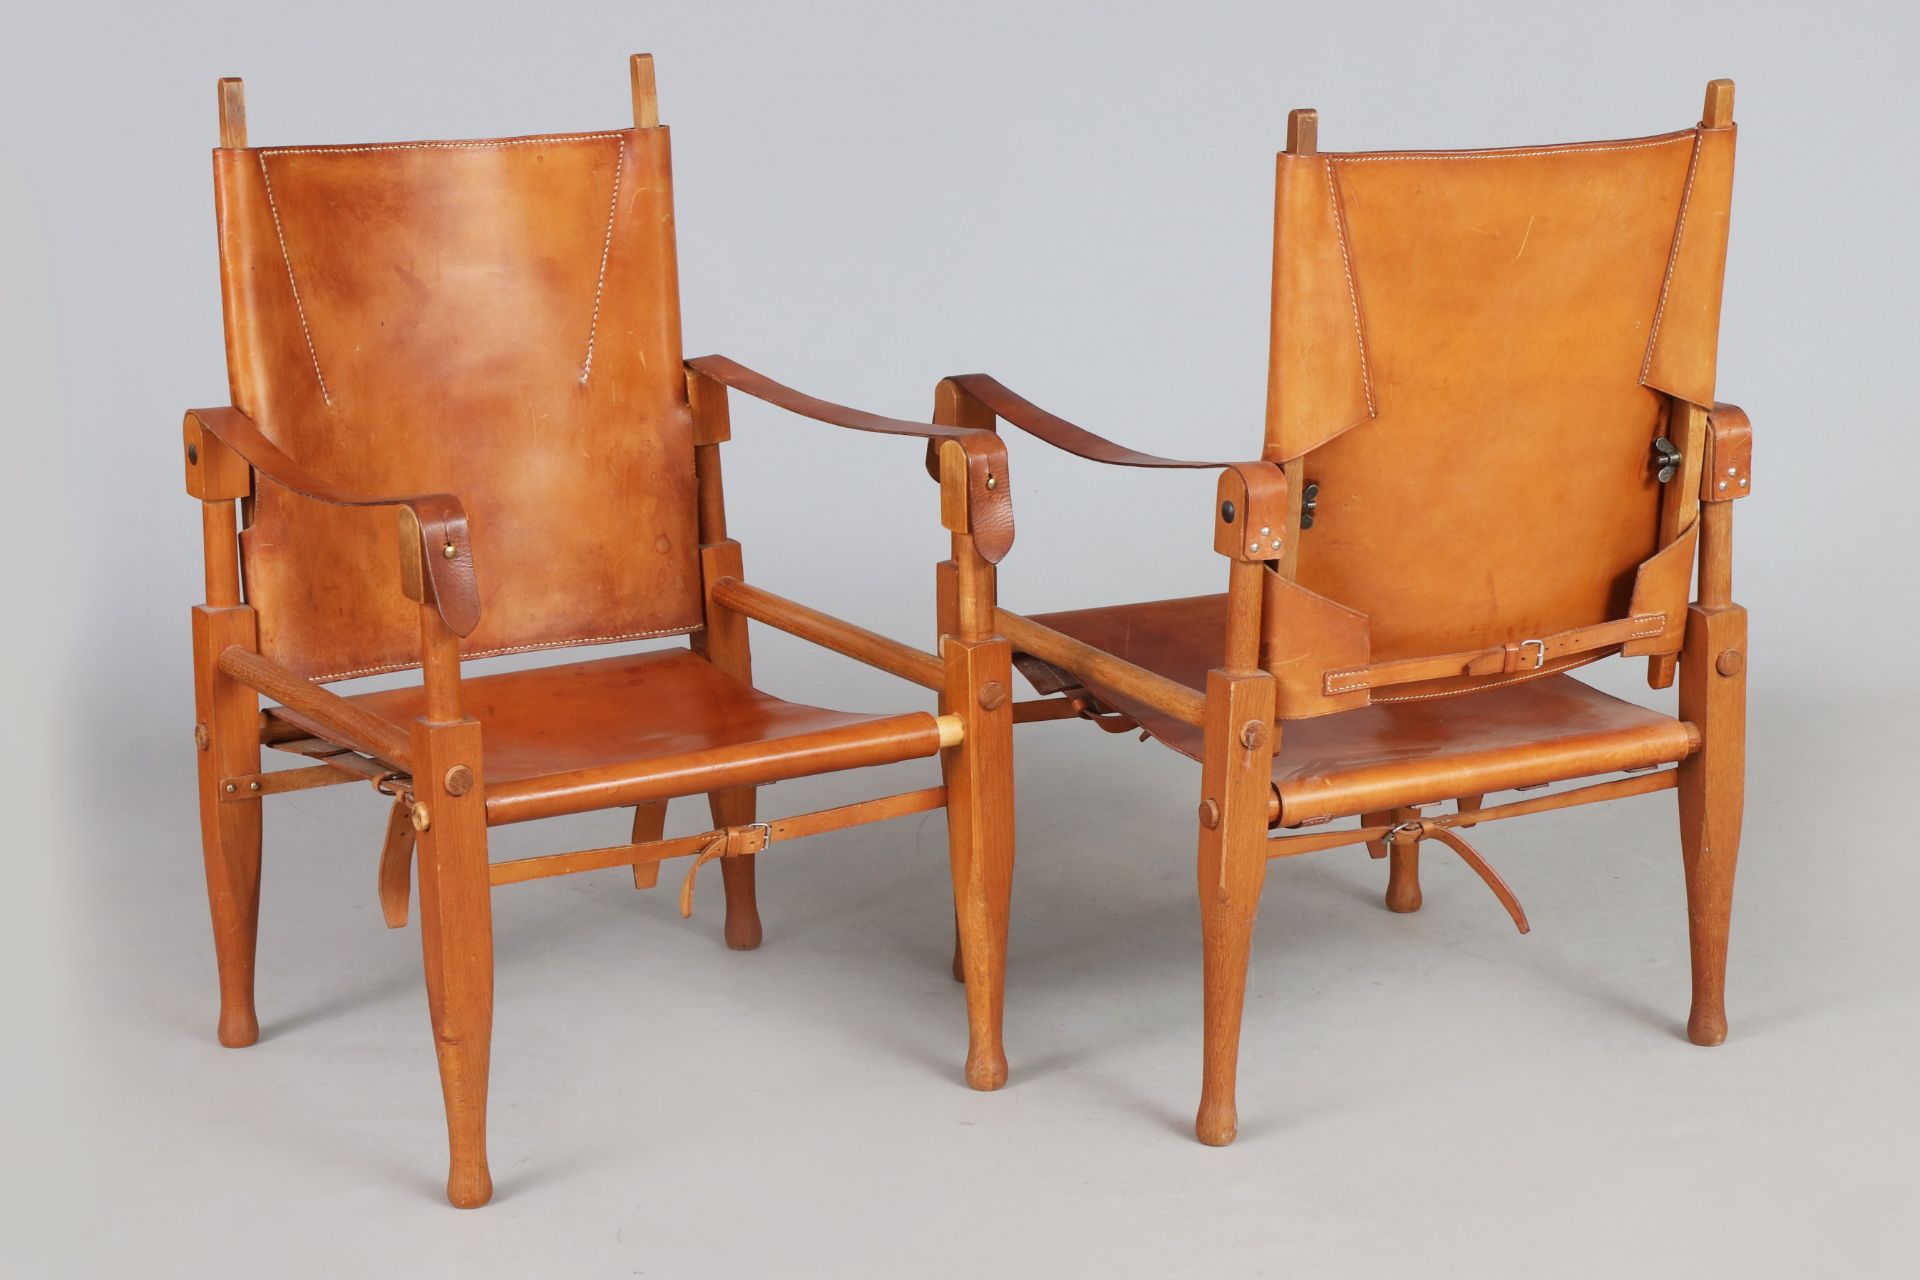 Paar WILHELM KIENZLE ¨Safari-chairs¨ - Image 2 of 6